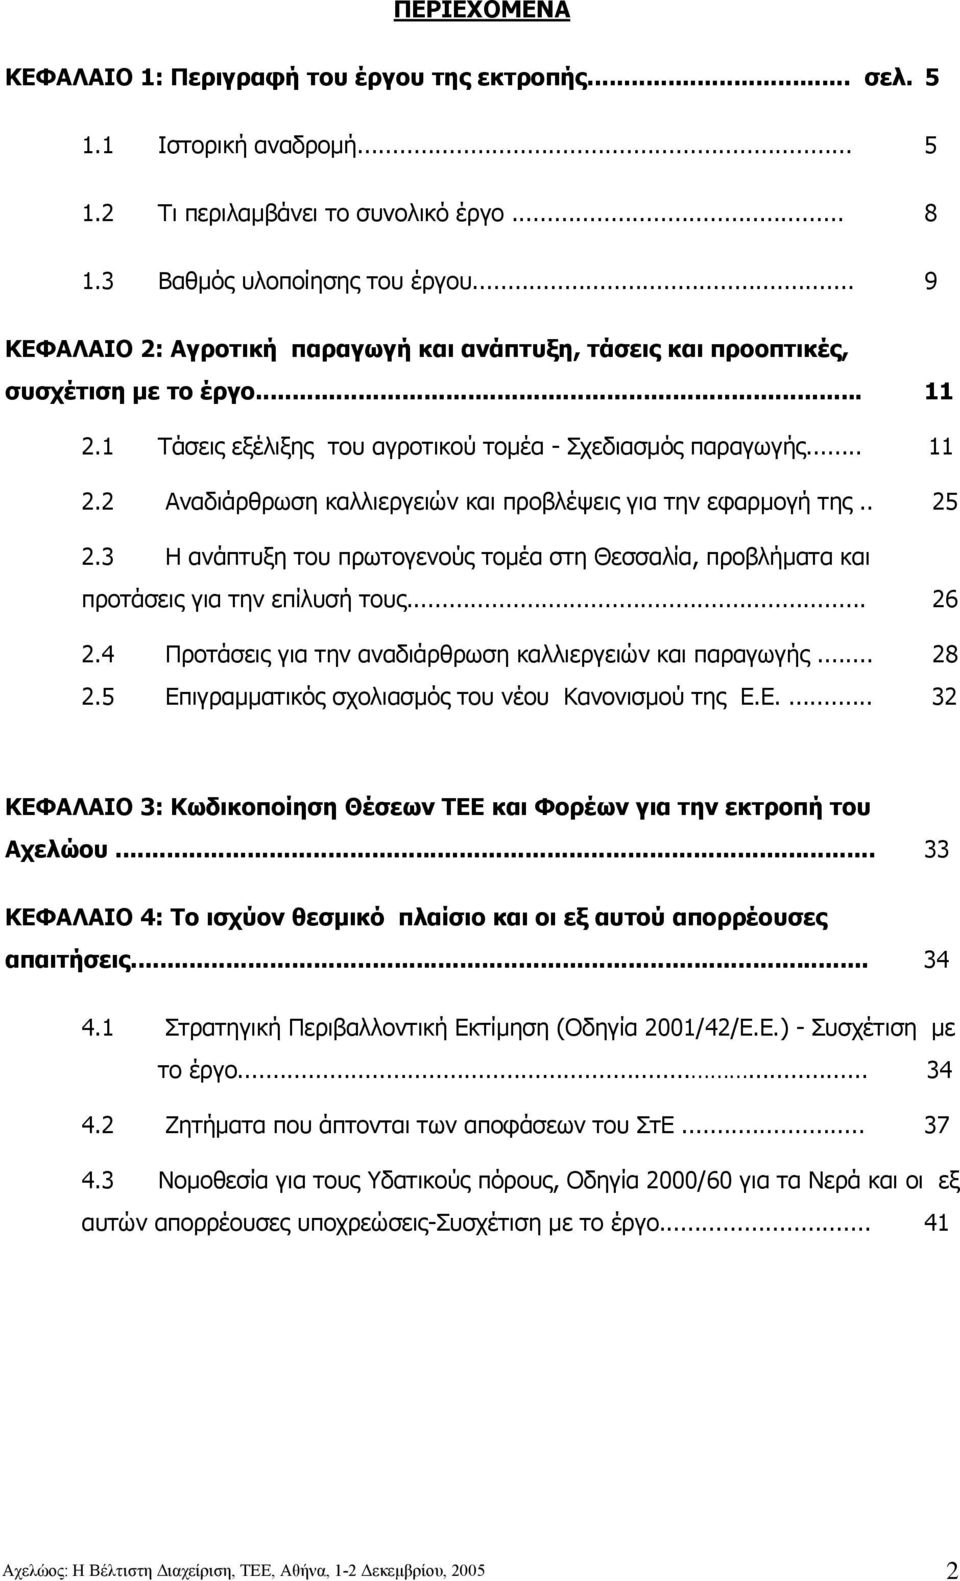 . 25 2.3 Η ανάπτυξη του πρωτογενούς τοµέα στη Θεσσαλία, προβλήµατα και προτάσεις για την επίλυσή τους... 26 2.4 Προτάσεις για την αναδιάρθρωση καλλιεργειών και παραγωγής... 28 2.